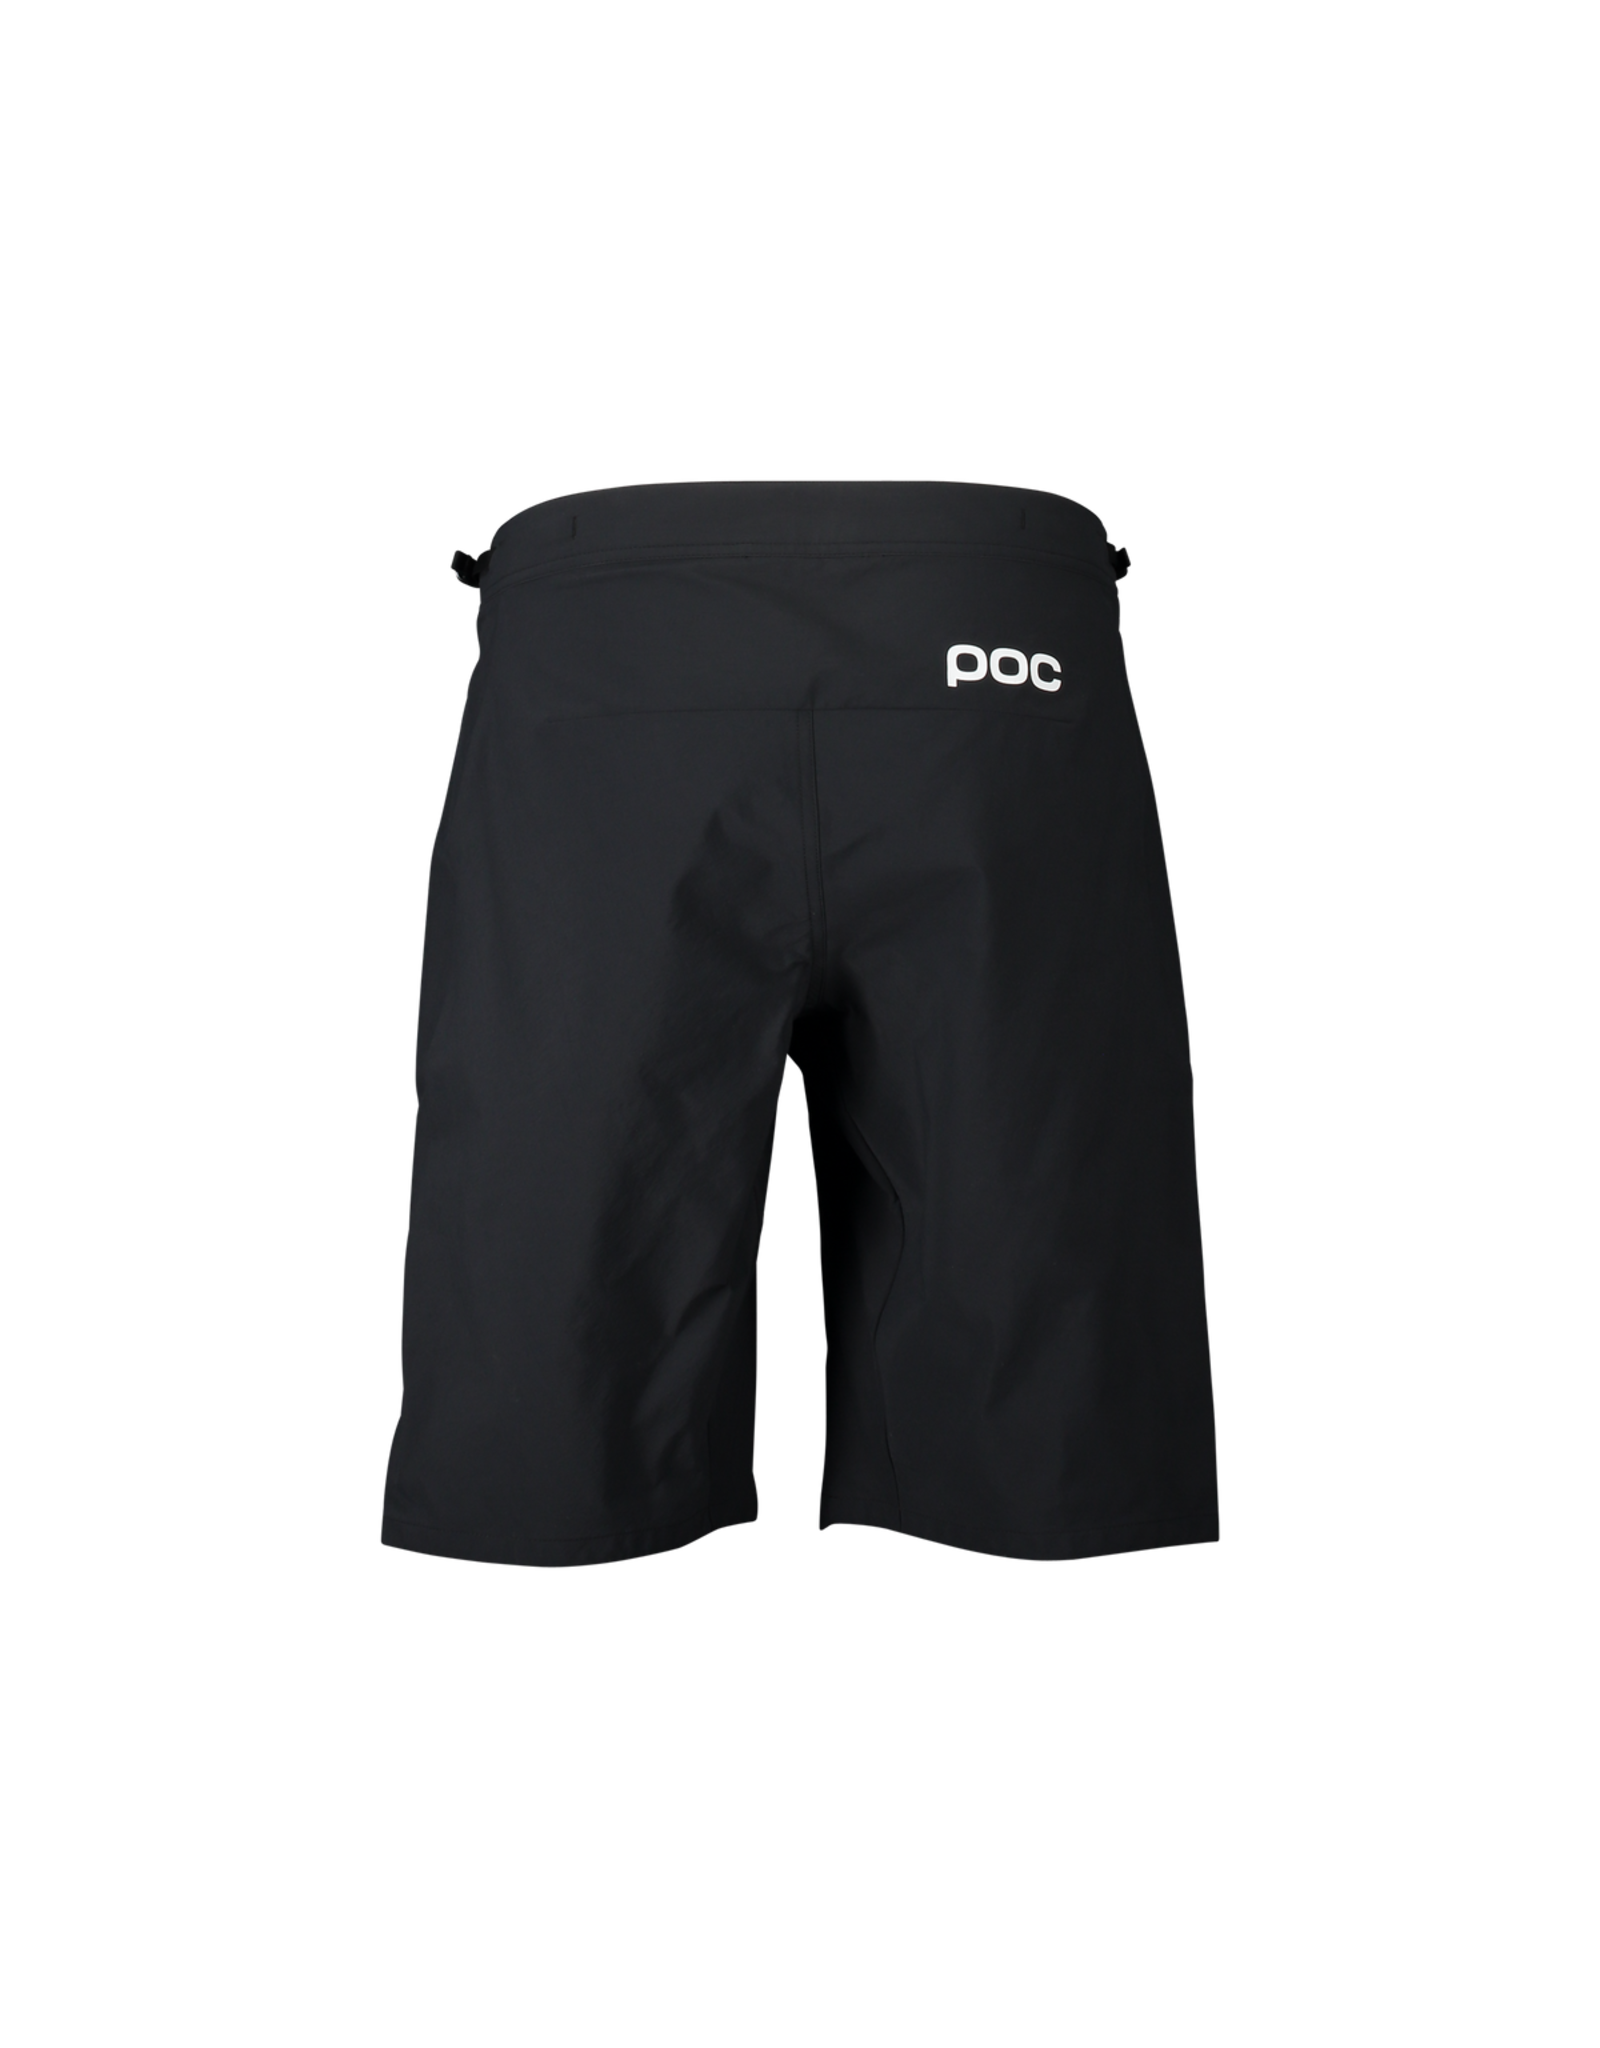 POC POC Essential Enduro Women’s Shorts